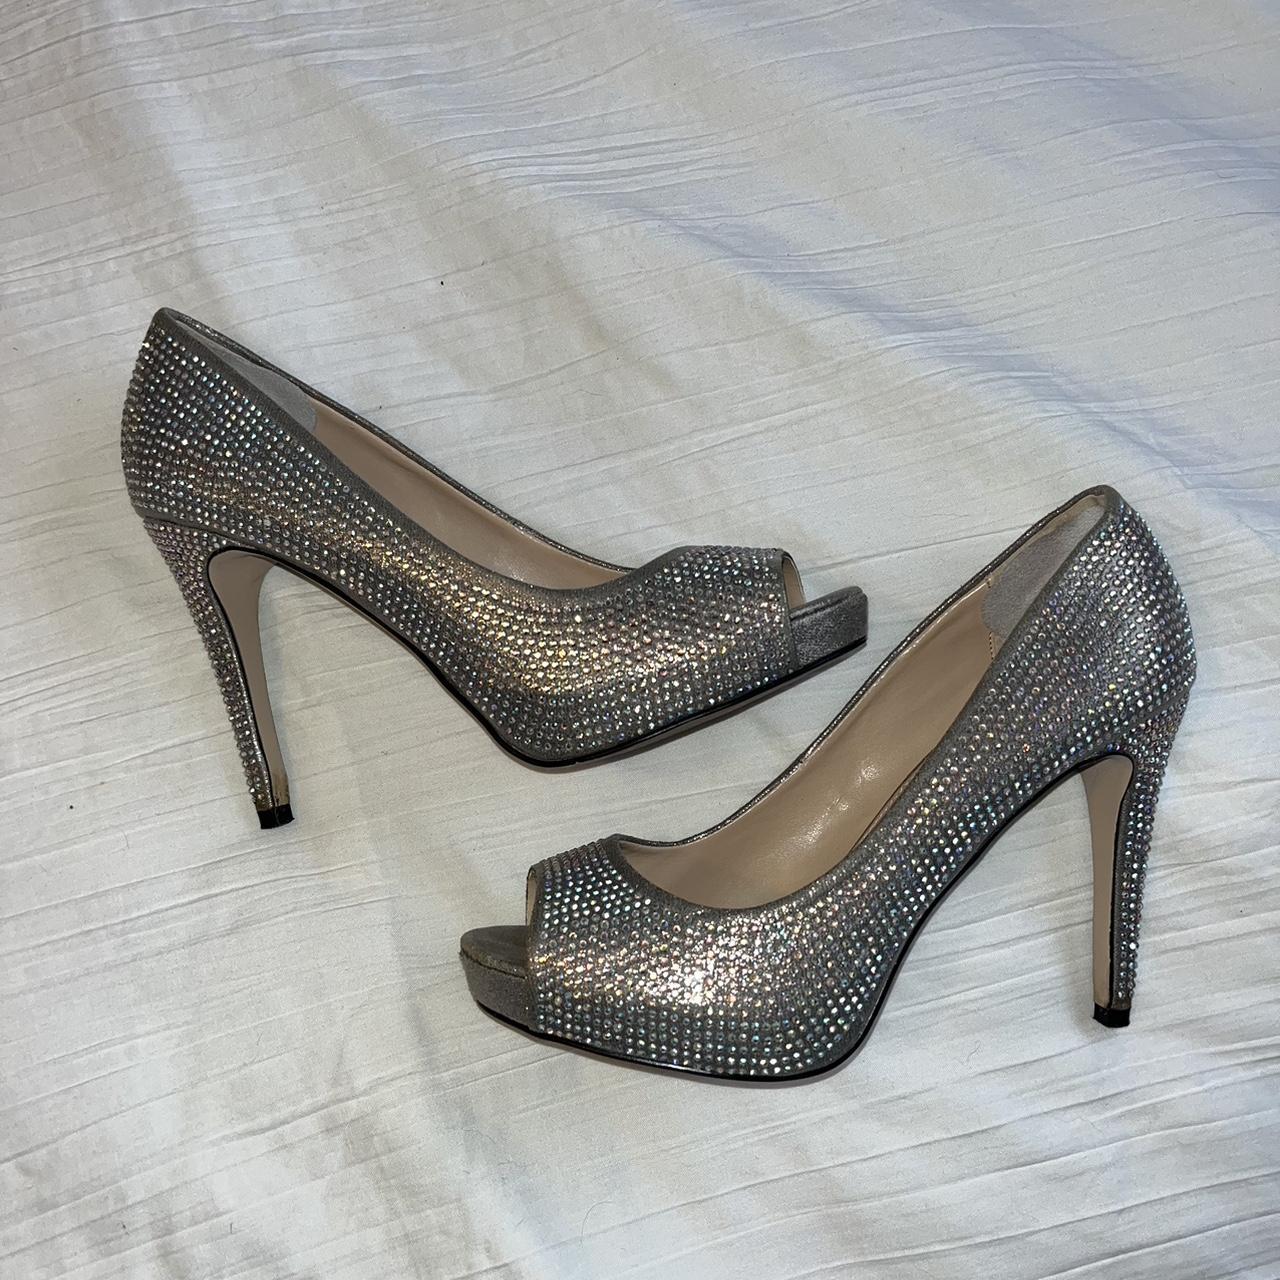 Kurt geiger sparkly heels size 5 worn ONCE - Depop